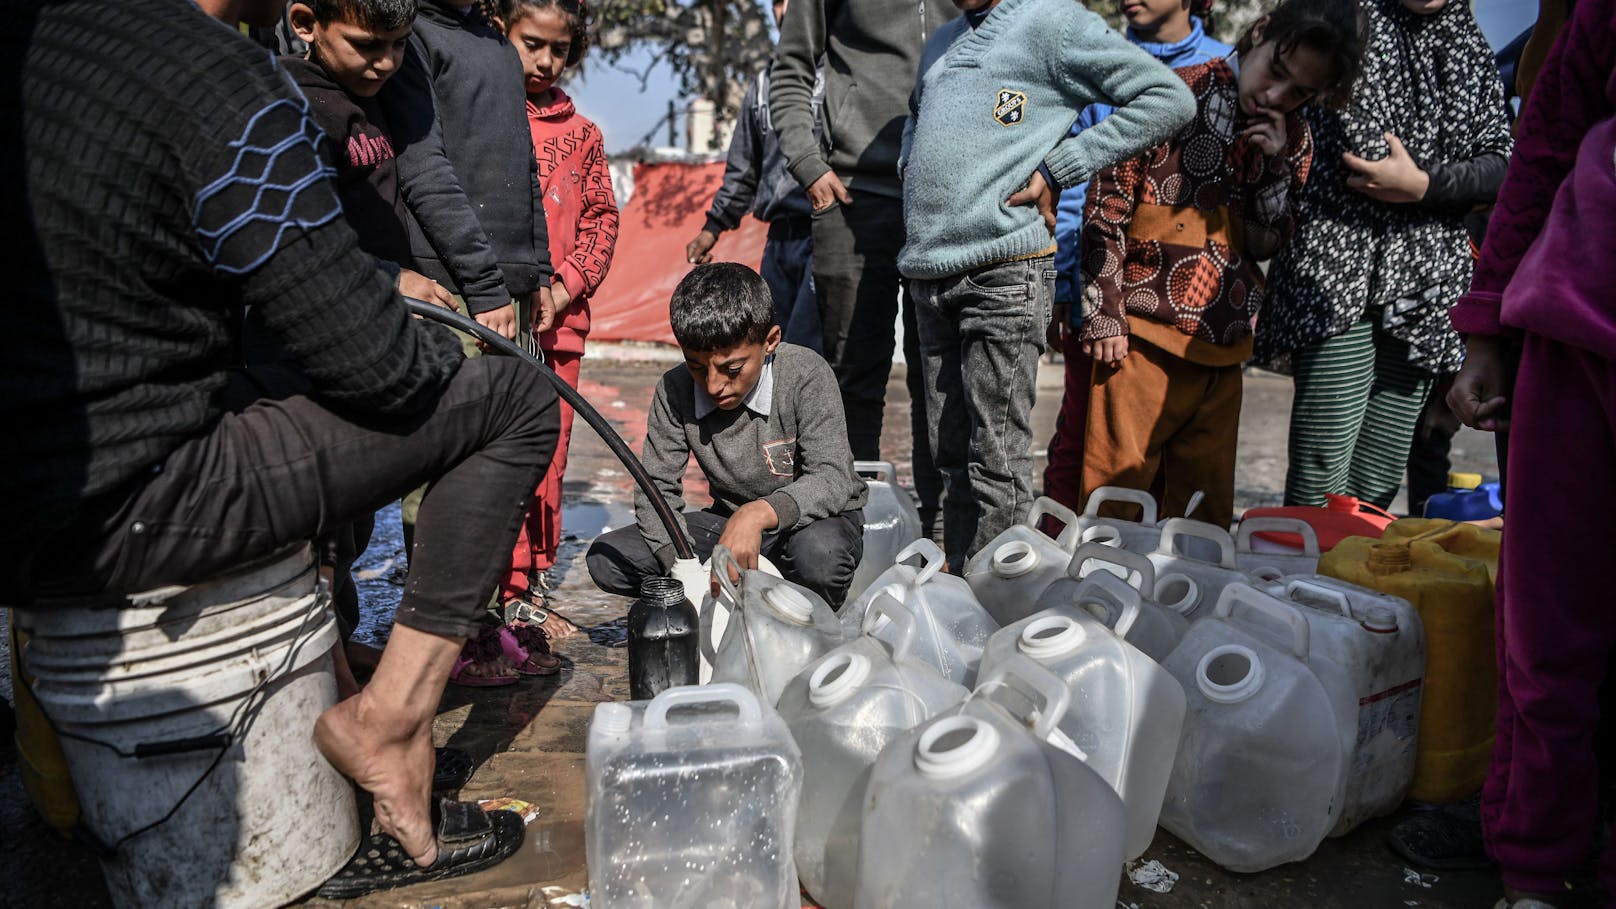 Für sauberes Trinkwasser stehen die Menschen im Gazastreifen an.